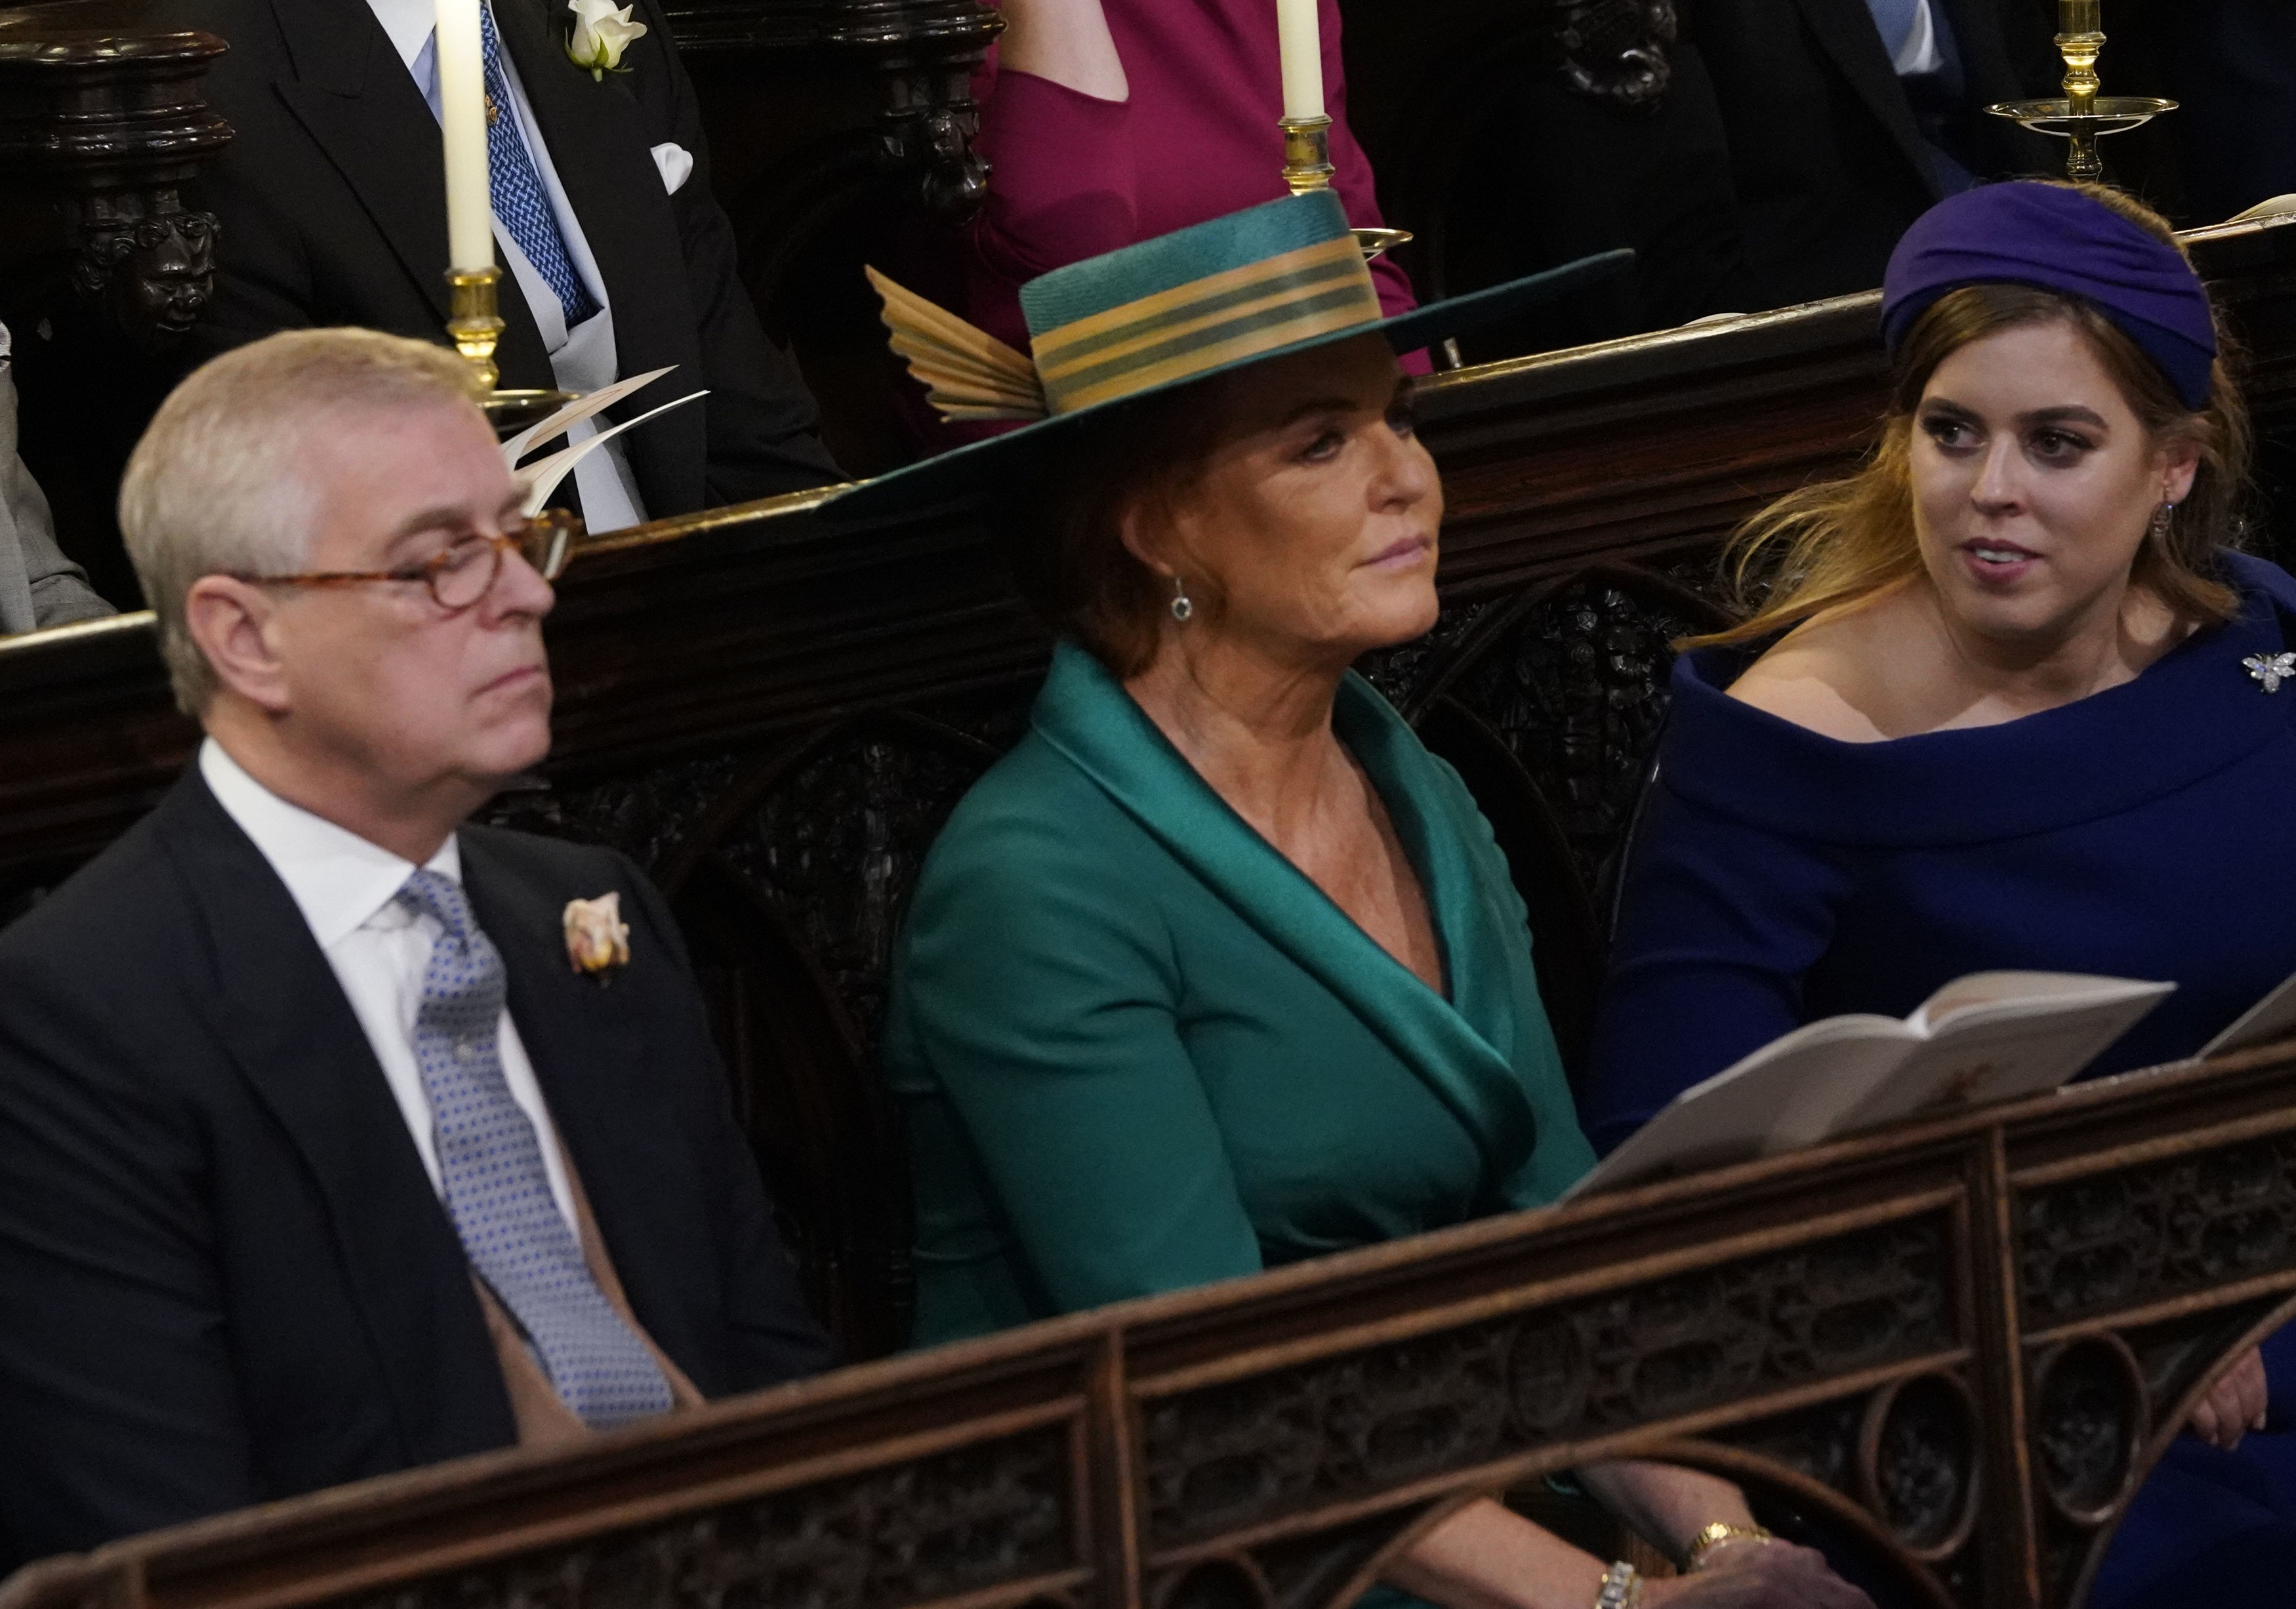 O Príncipe Andrew ao lado de Sarah Ferguson e de uma das filhas dos dois em evento da realeza britânica (Foto: Getty Images)